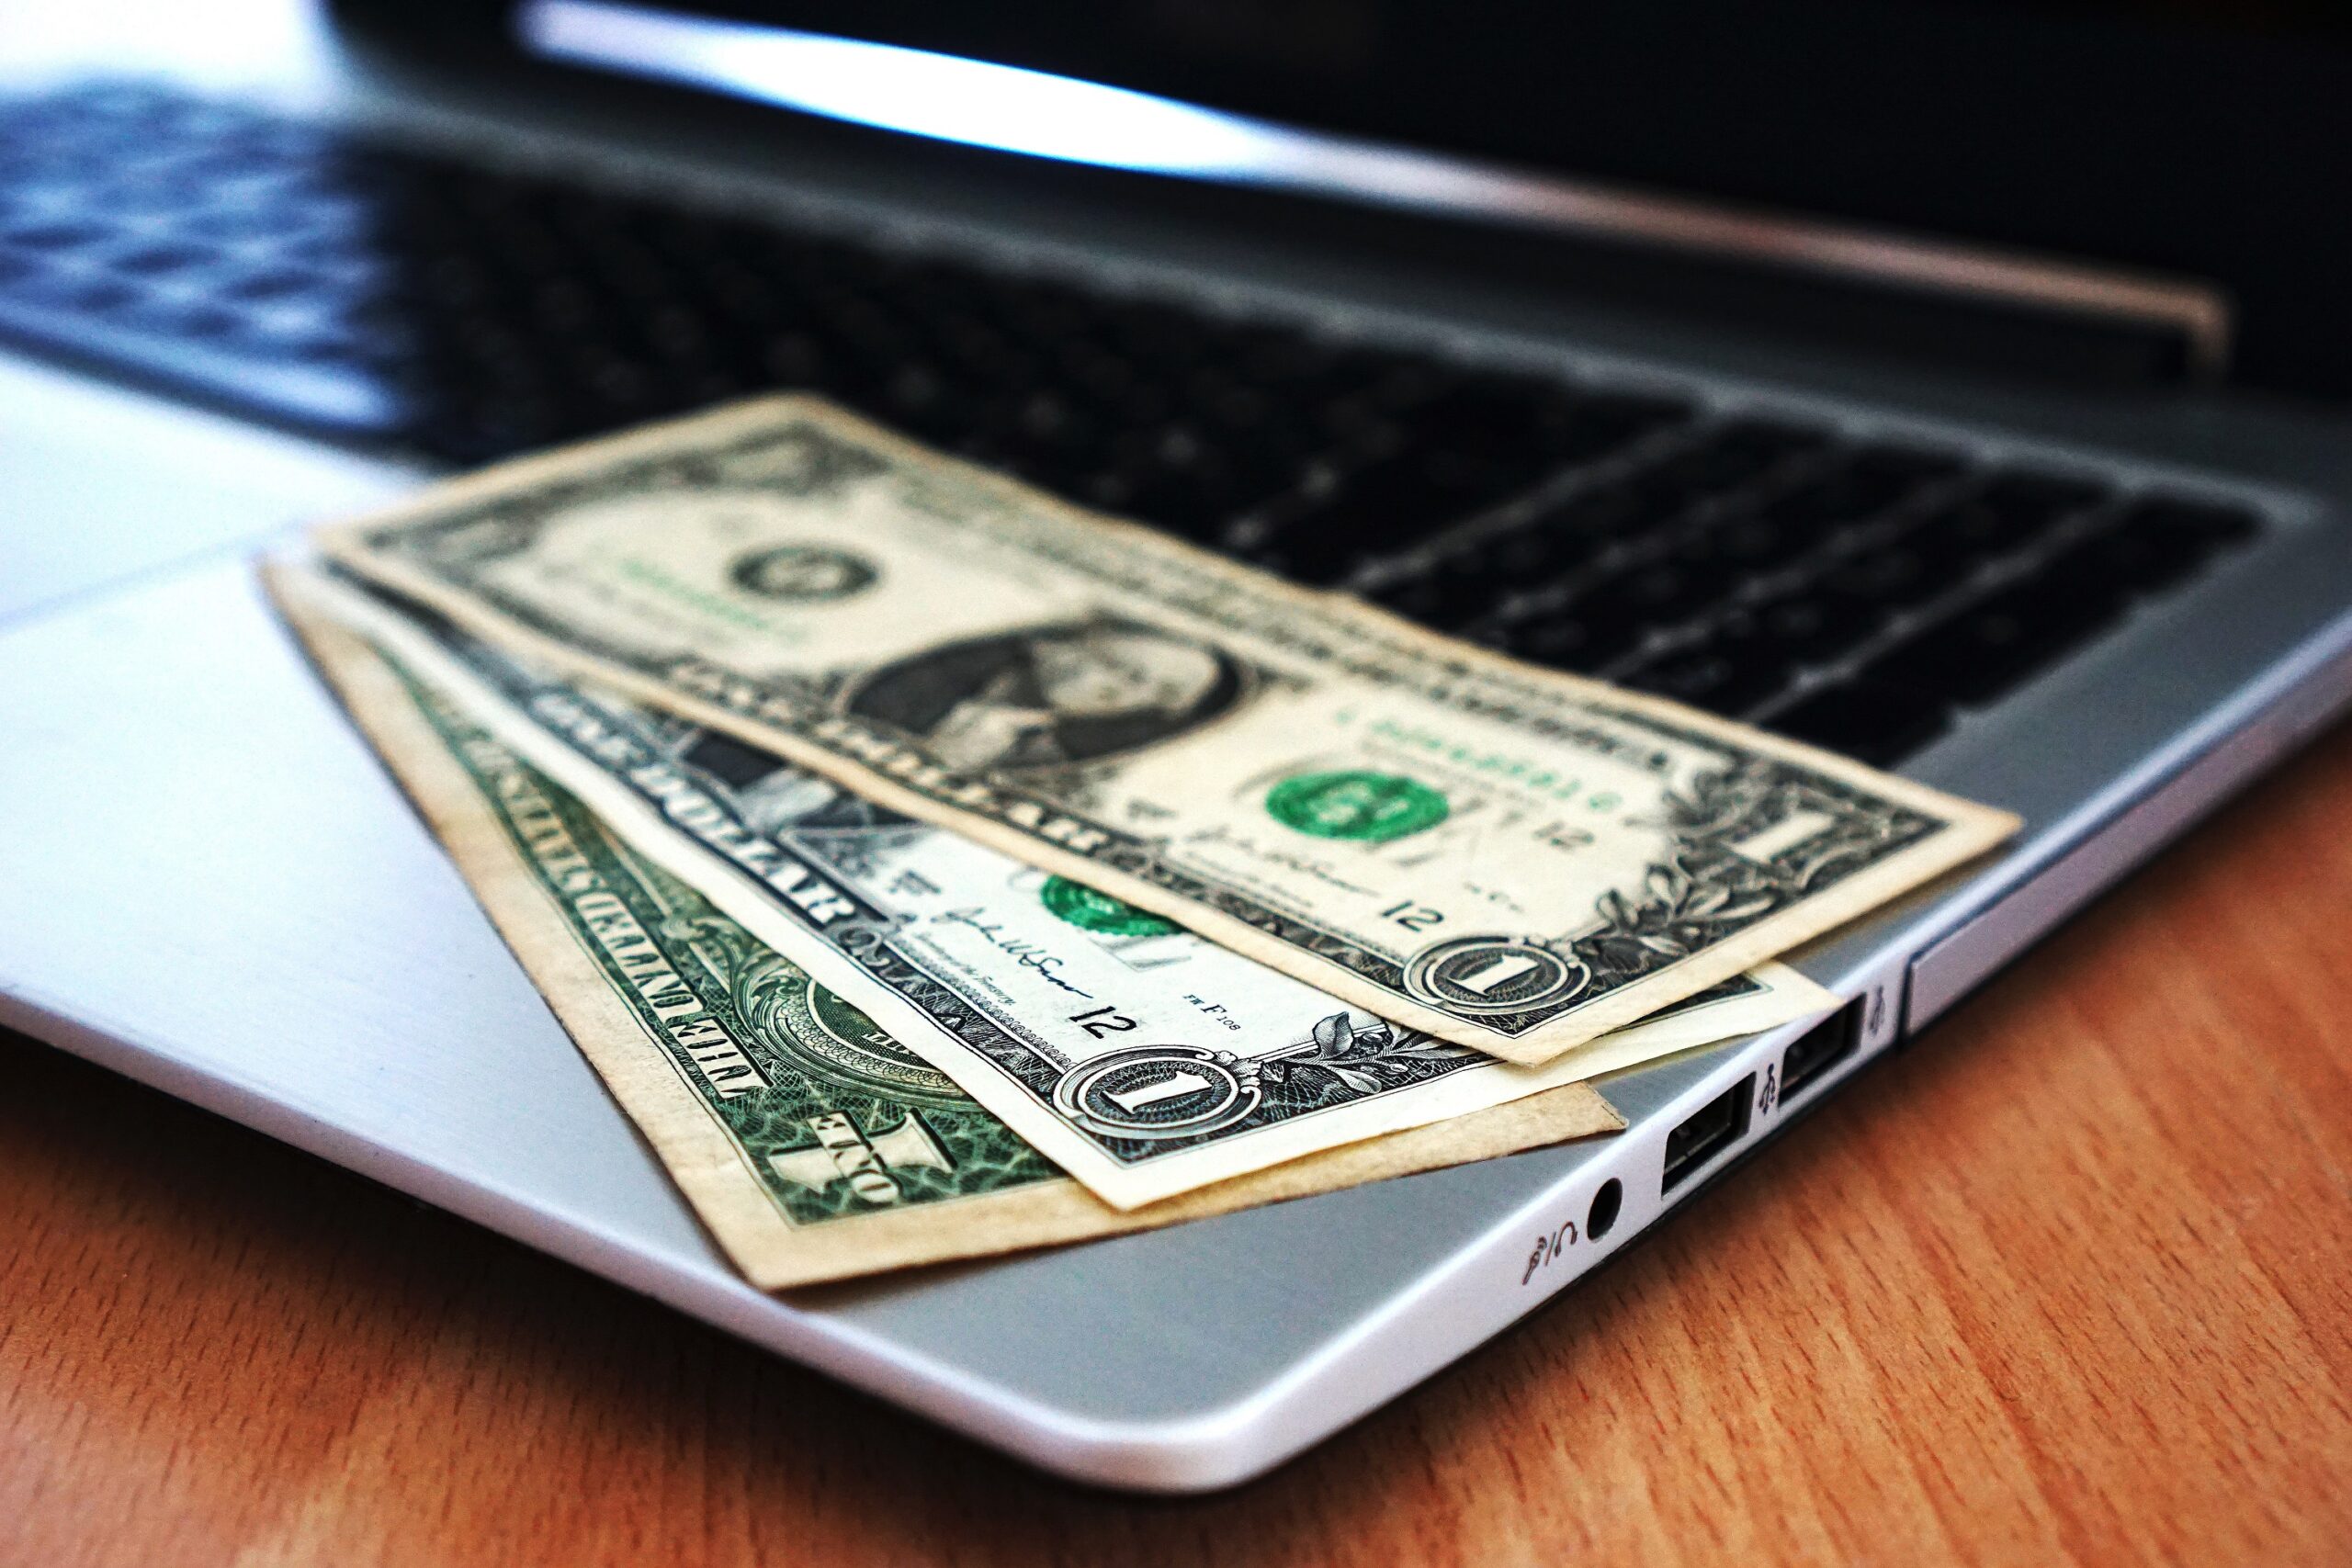 10 Ideias de Negócios Online Para Começar a Ganhar Dinheiro